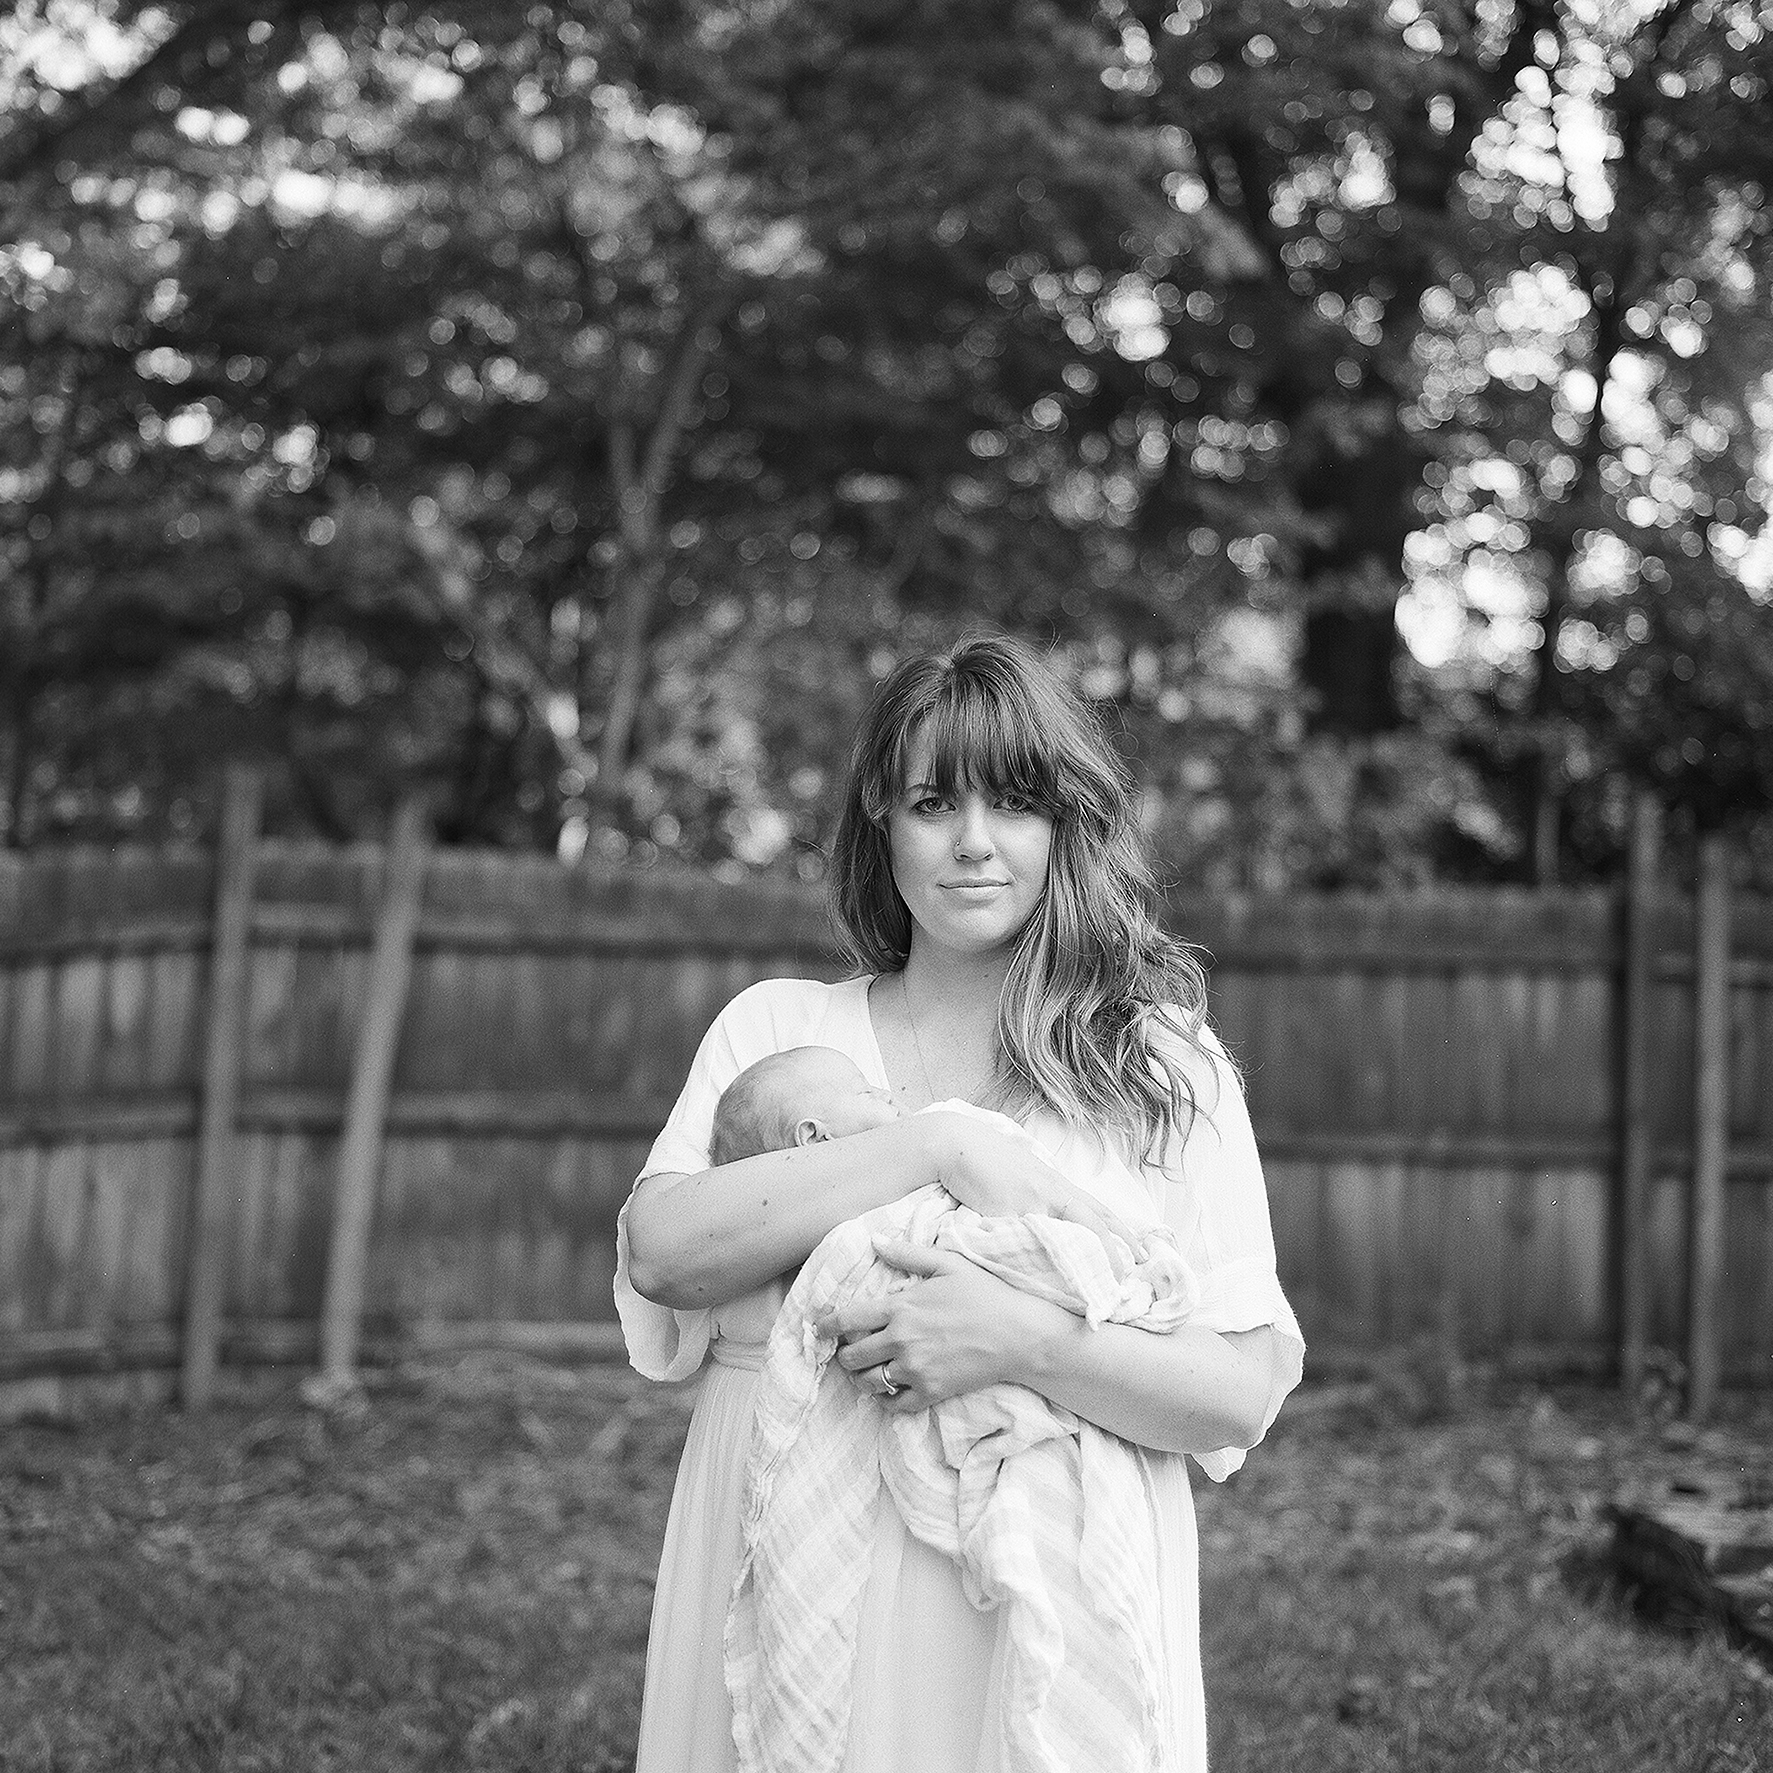 Portland Maine and Boston Black and white film Newborn Photographer Tiffany Farley, http://www.tiffanyfarley.com